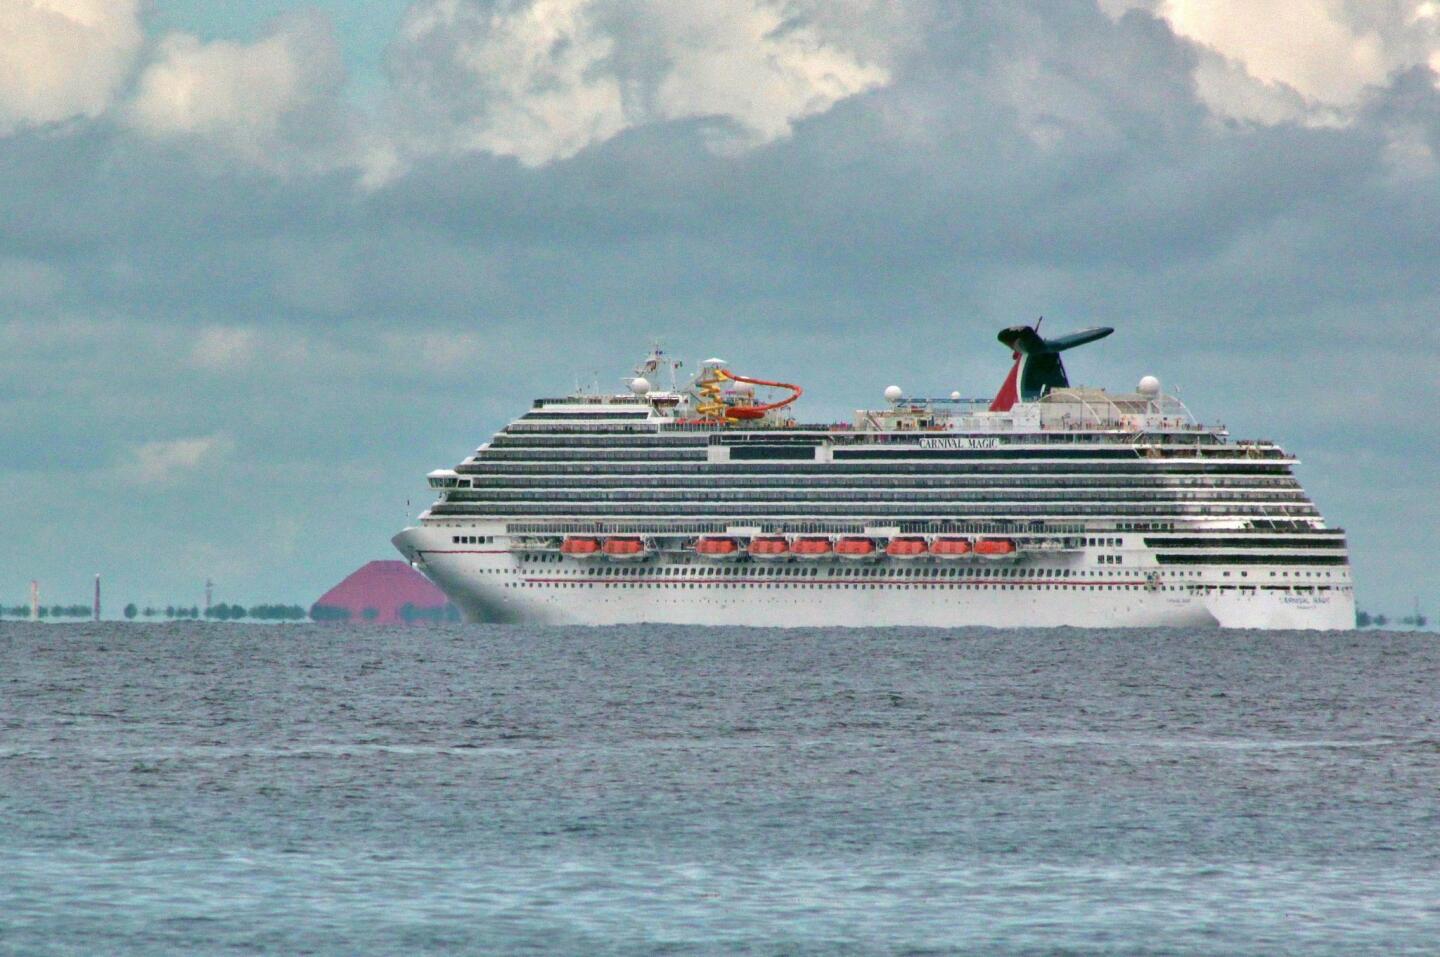 Carnival Magic cruise ship